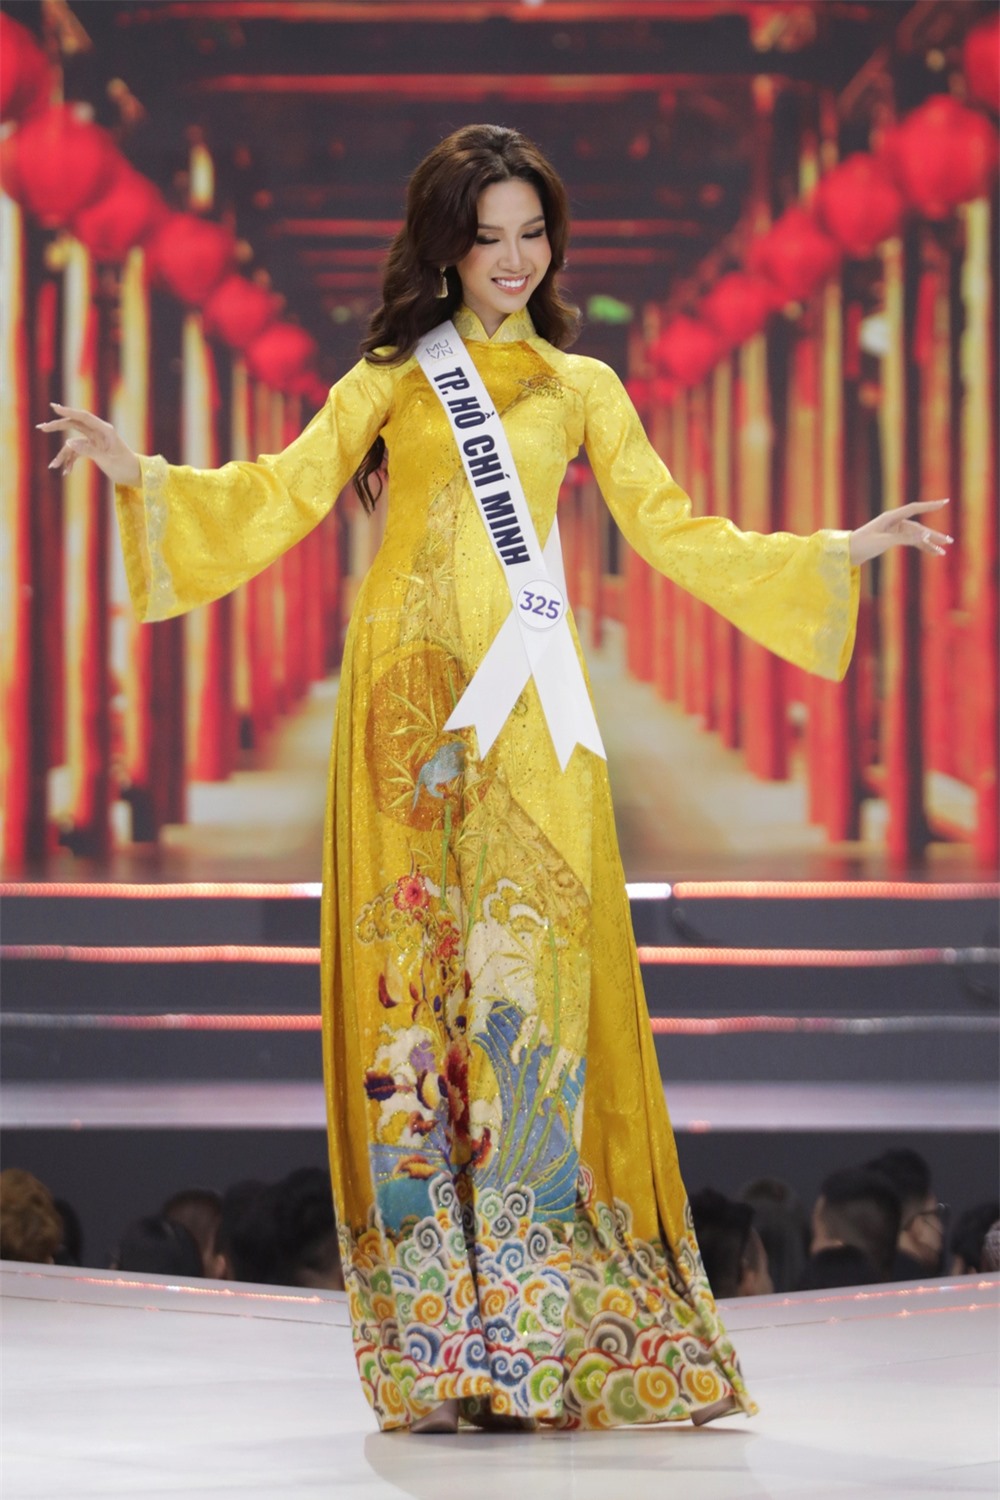 Bán kết Hoa hậu Hoàn vũ Việt Nam 2022: Loạt ứng viên cùng khoe vẻ nóng bỏng - Ảnh 5.